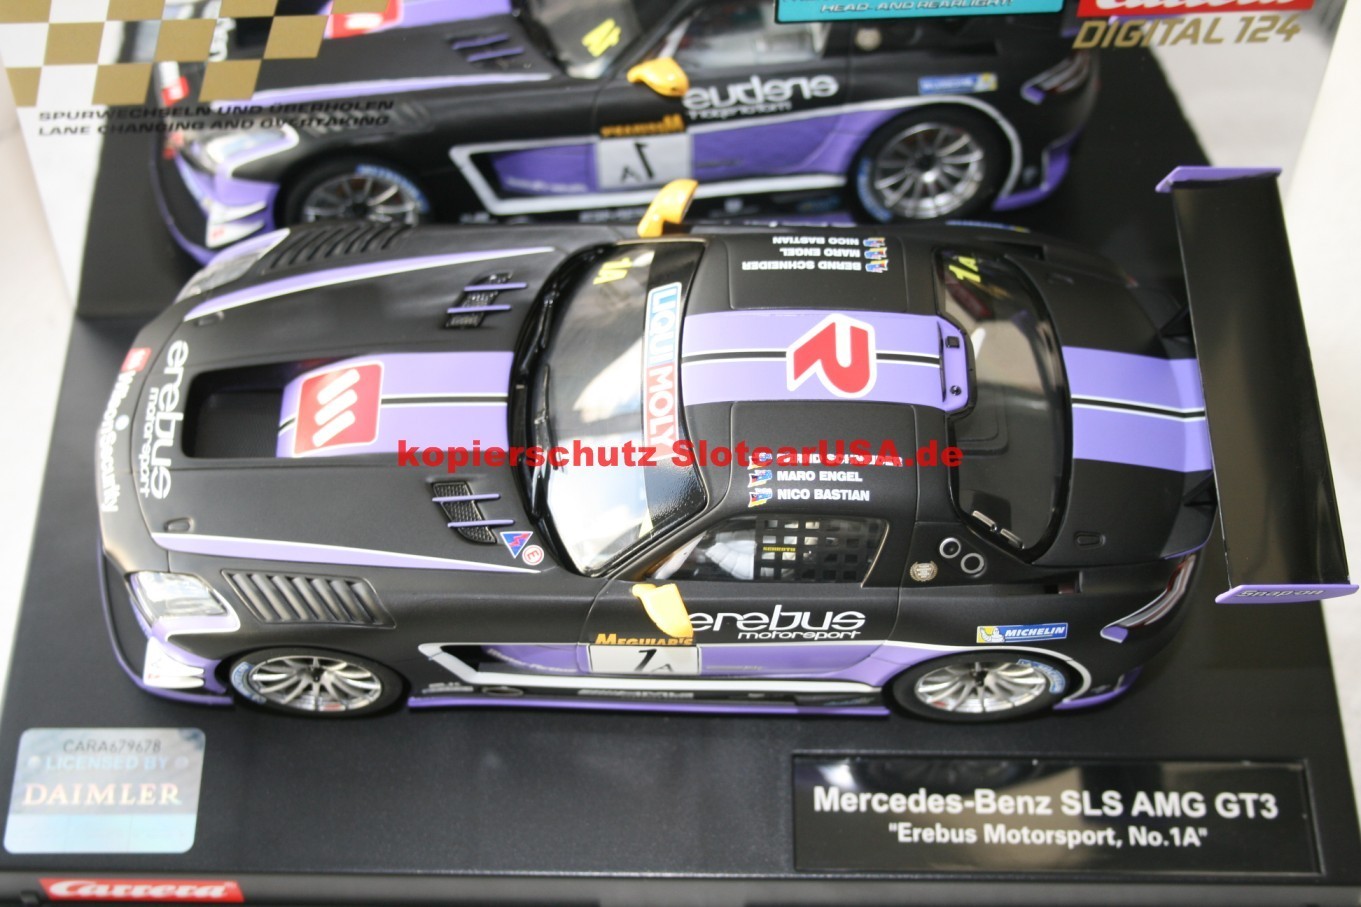 36-85452 Carrera Digital 124 Ersatzteil-Set für Mercedes-Benz SLS AMG GT3 No 